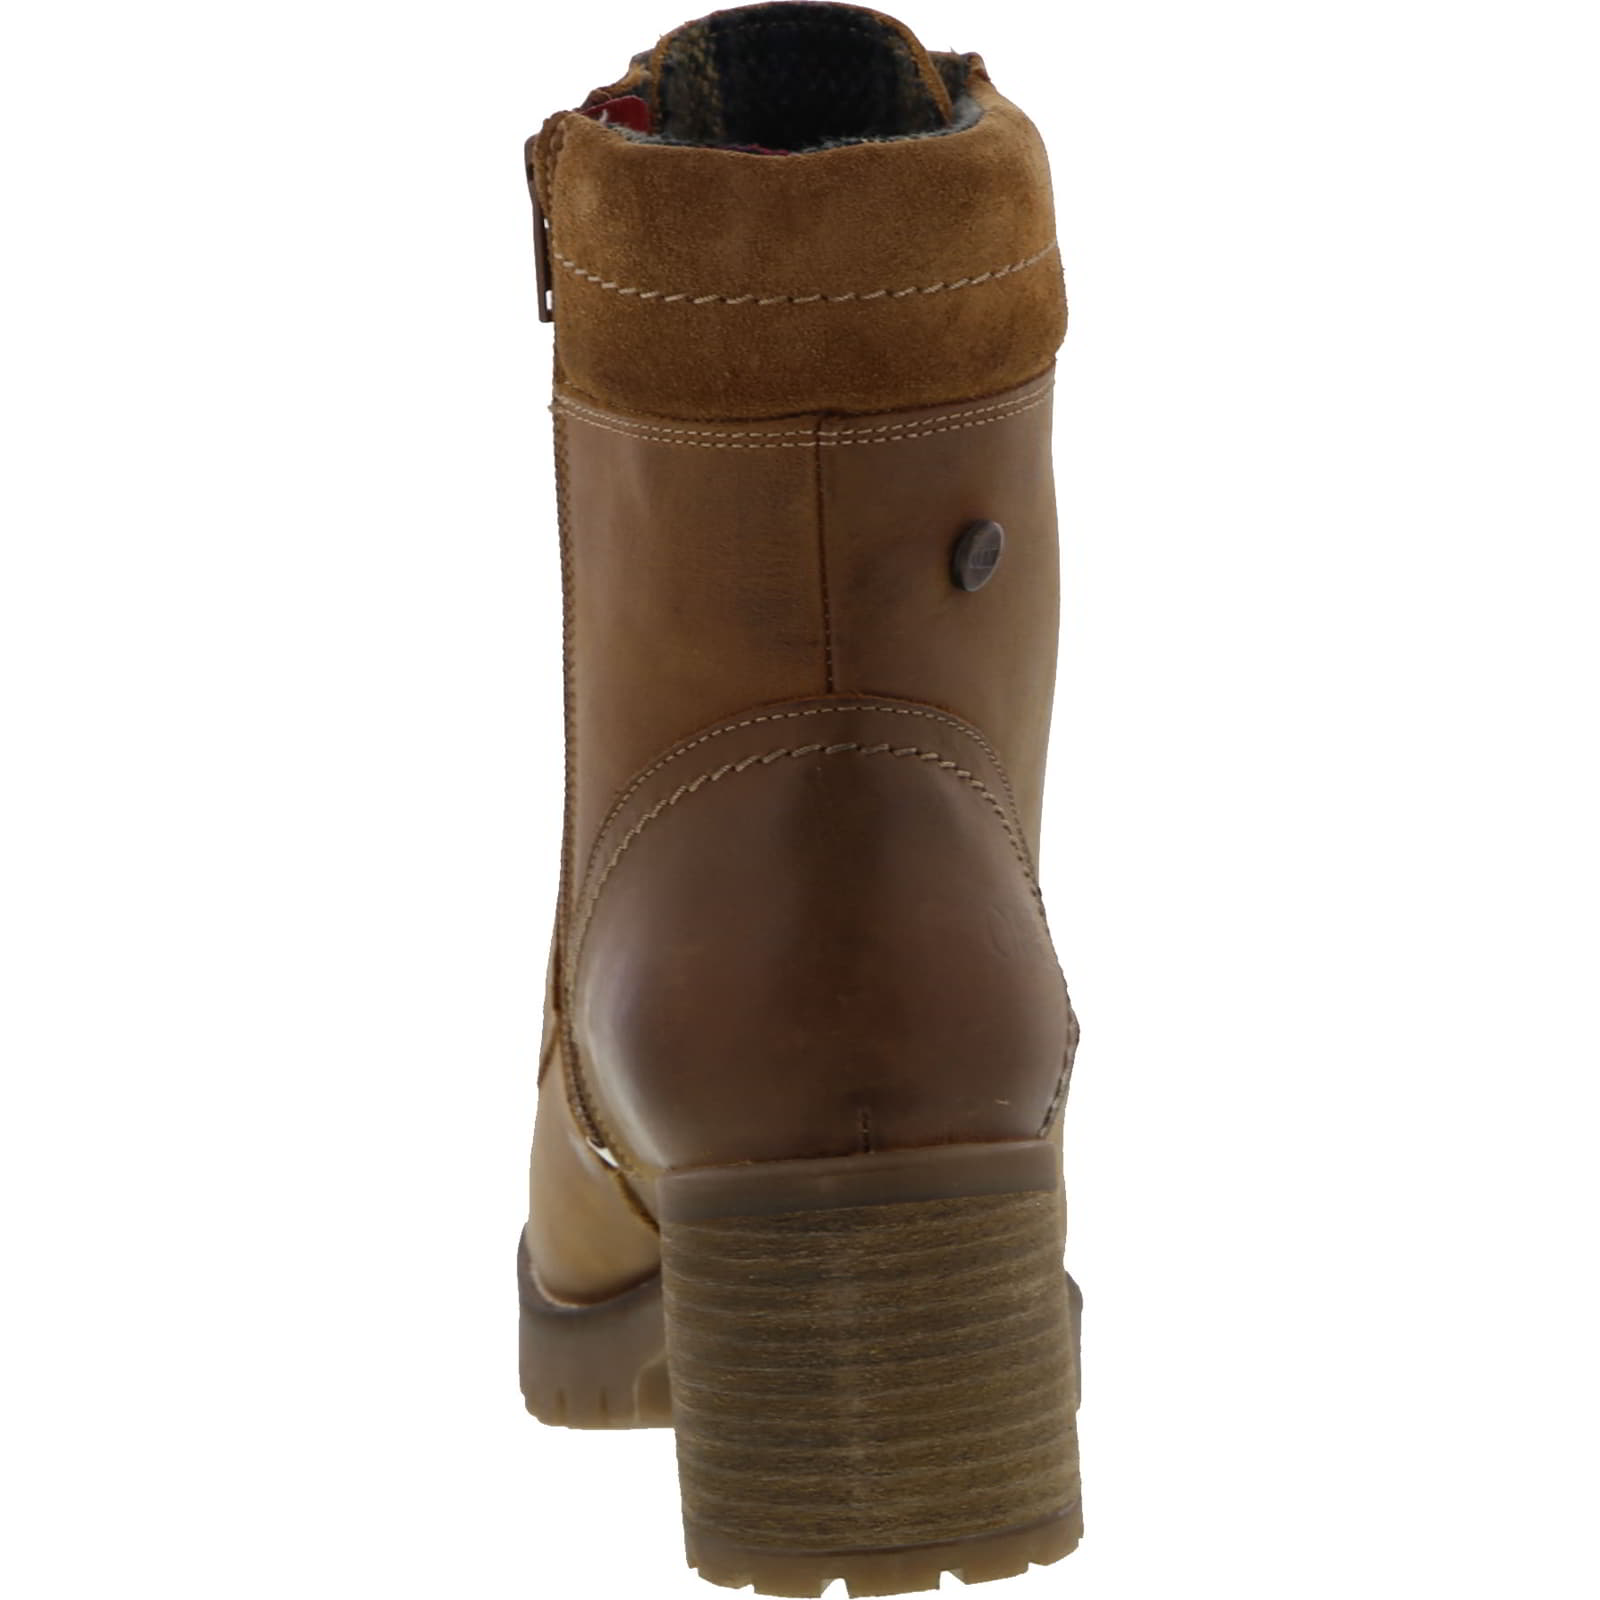 Womens Kensington Leather Ankle Boots - Cognac